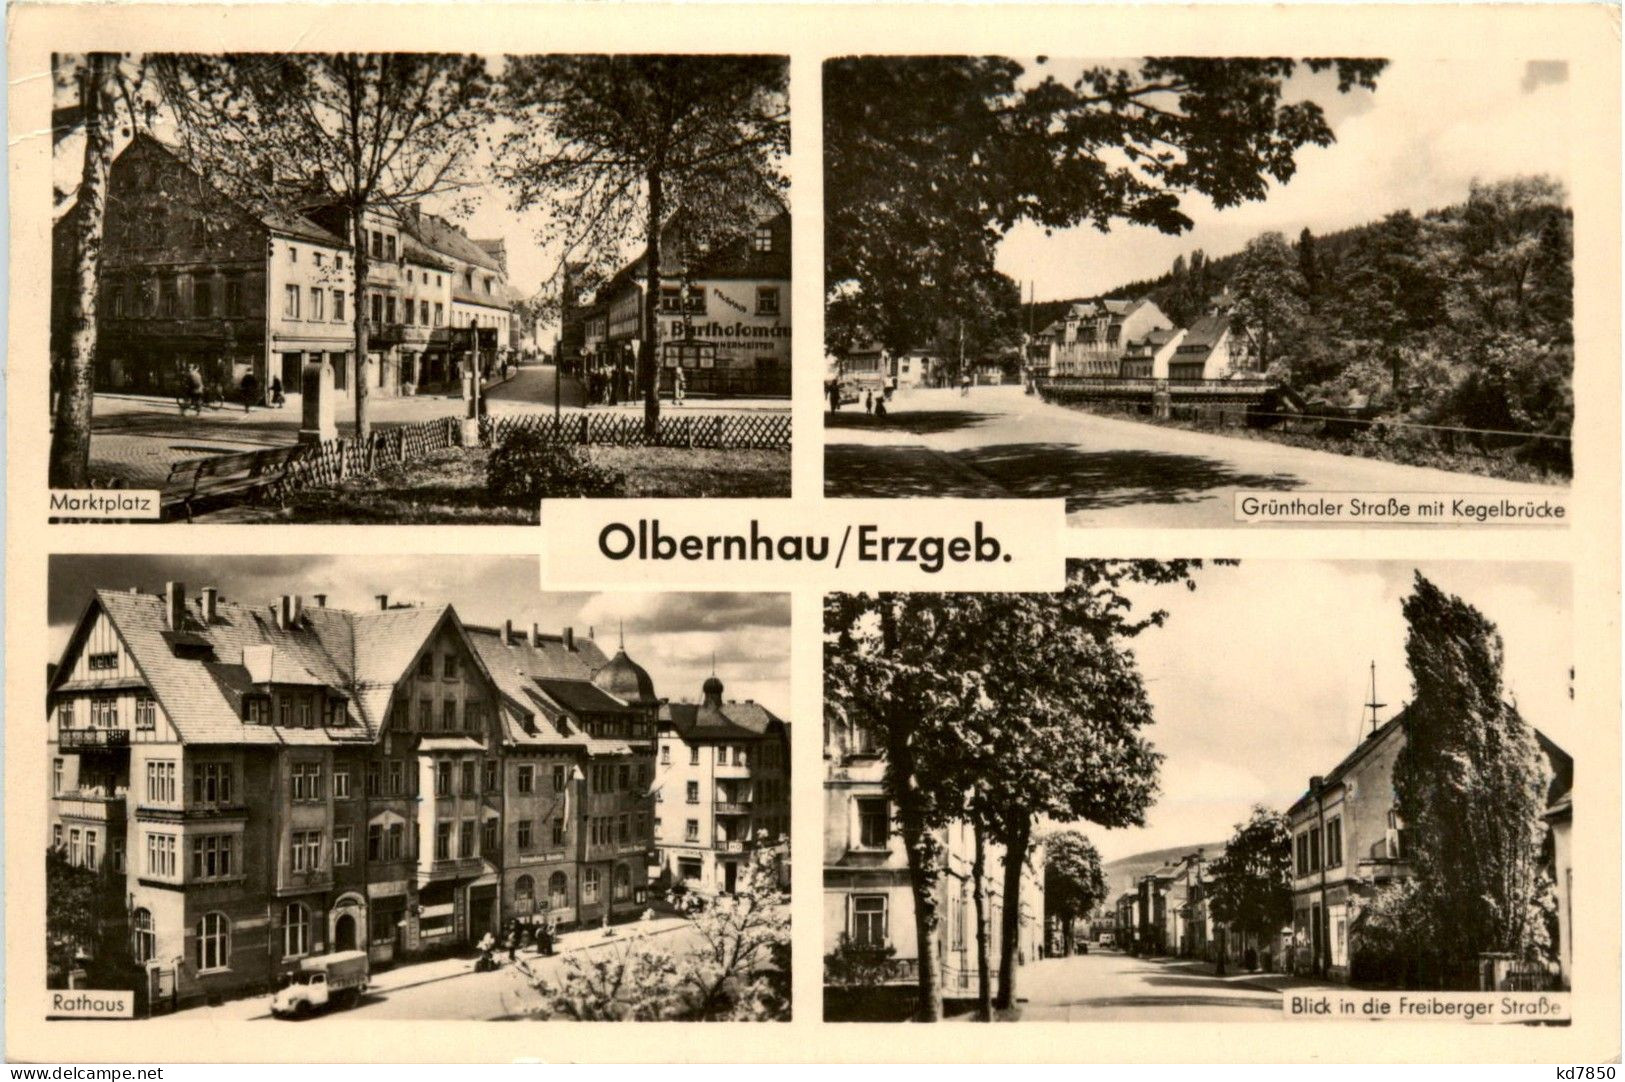 Olbernhau - Olbernhau